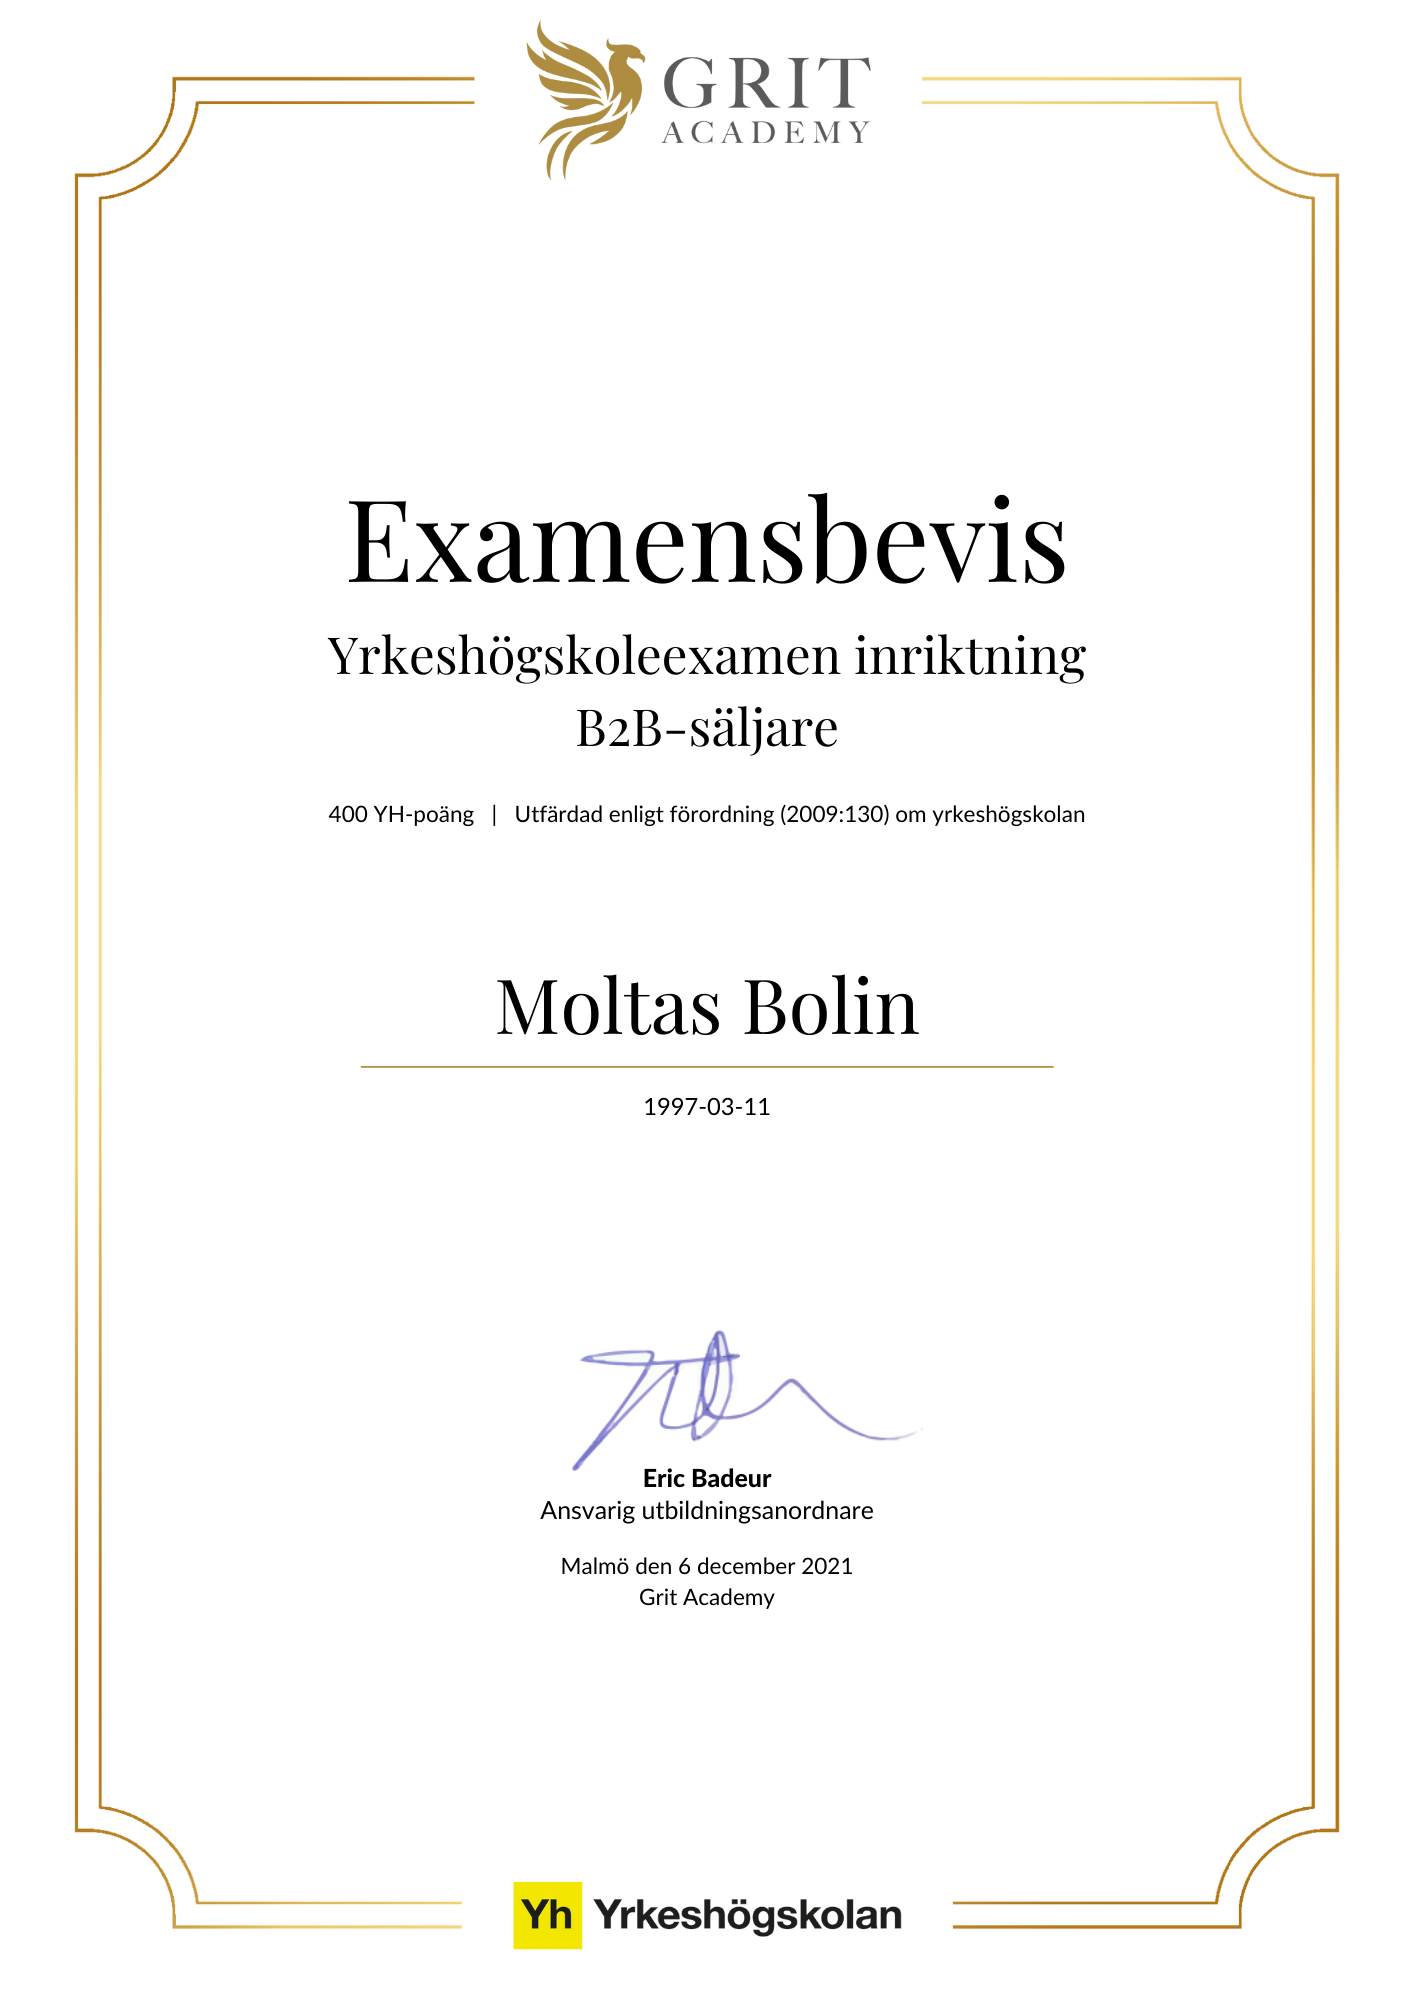 Examensbevis Moltas Bolin - 1